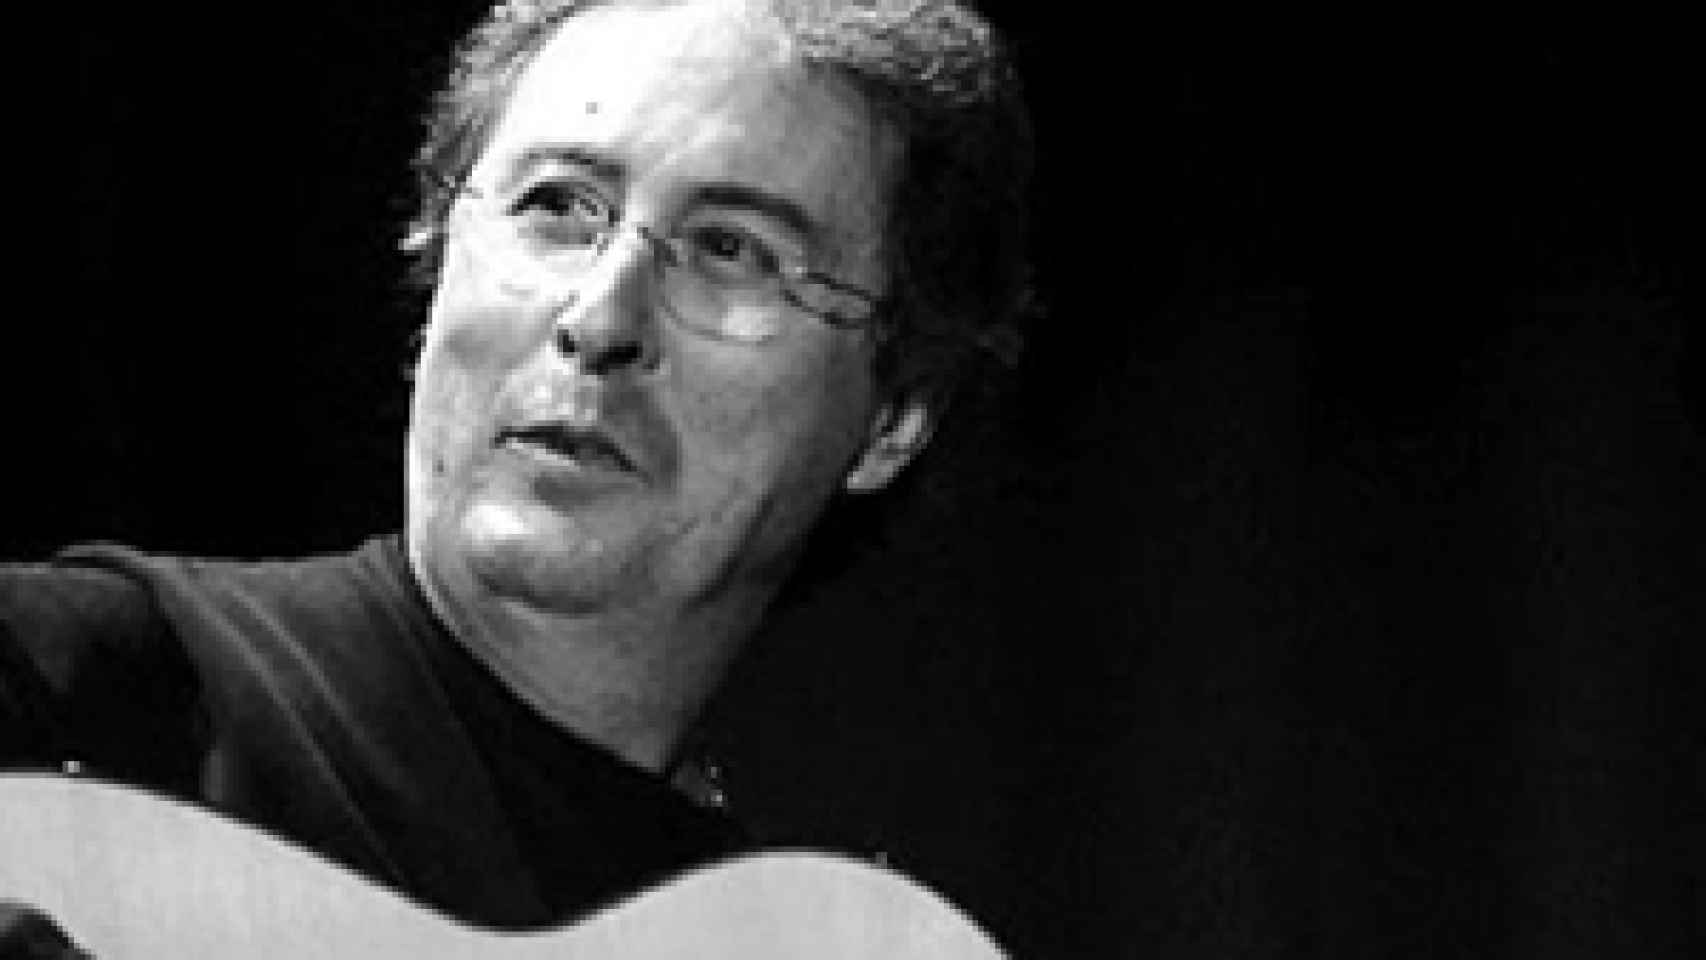 Image: Fallece el guitarrista sevillano Enrique de Melchor a los 61 años